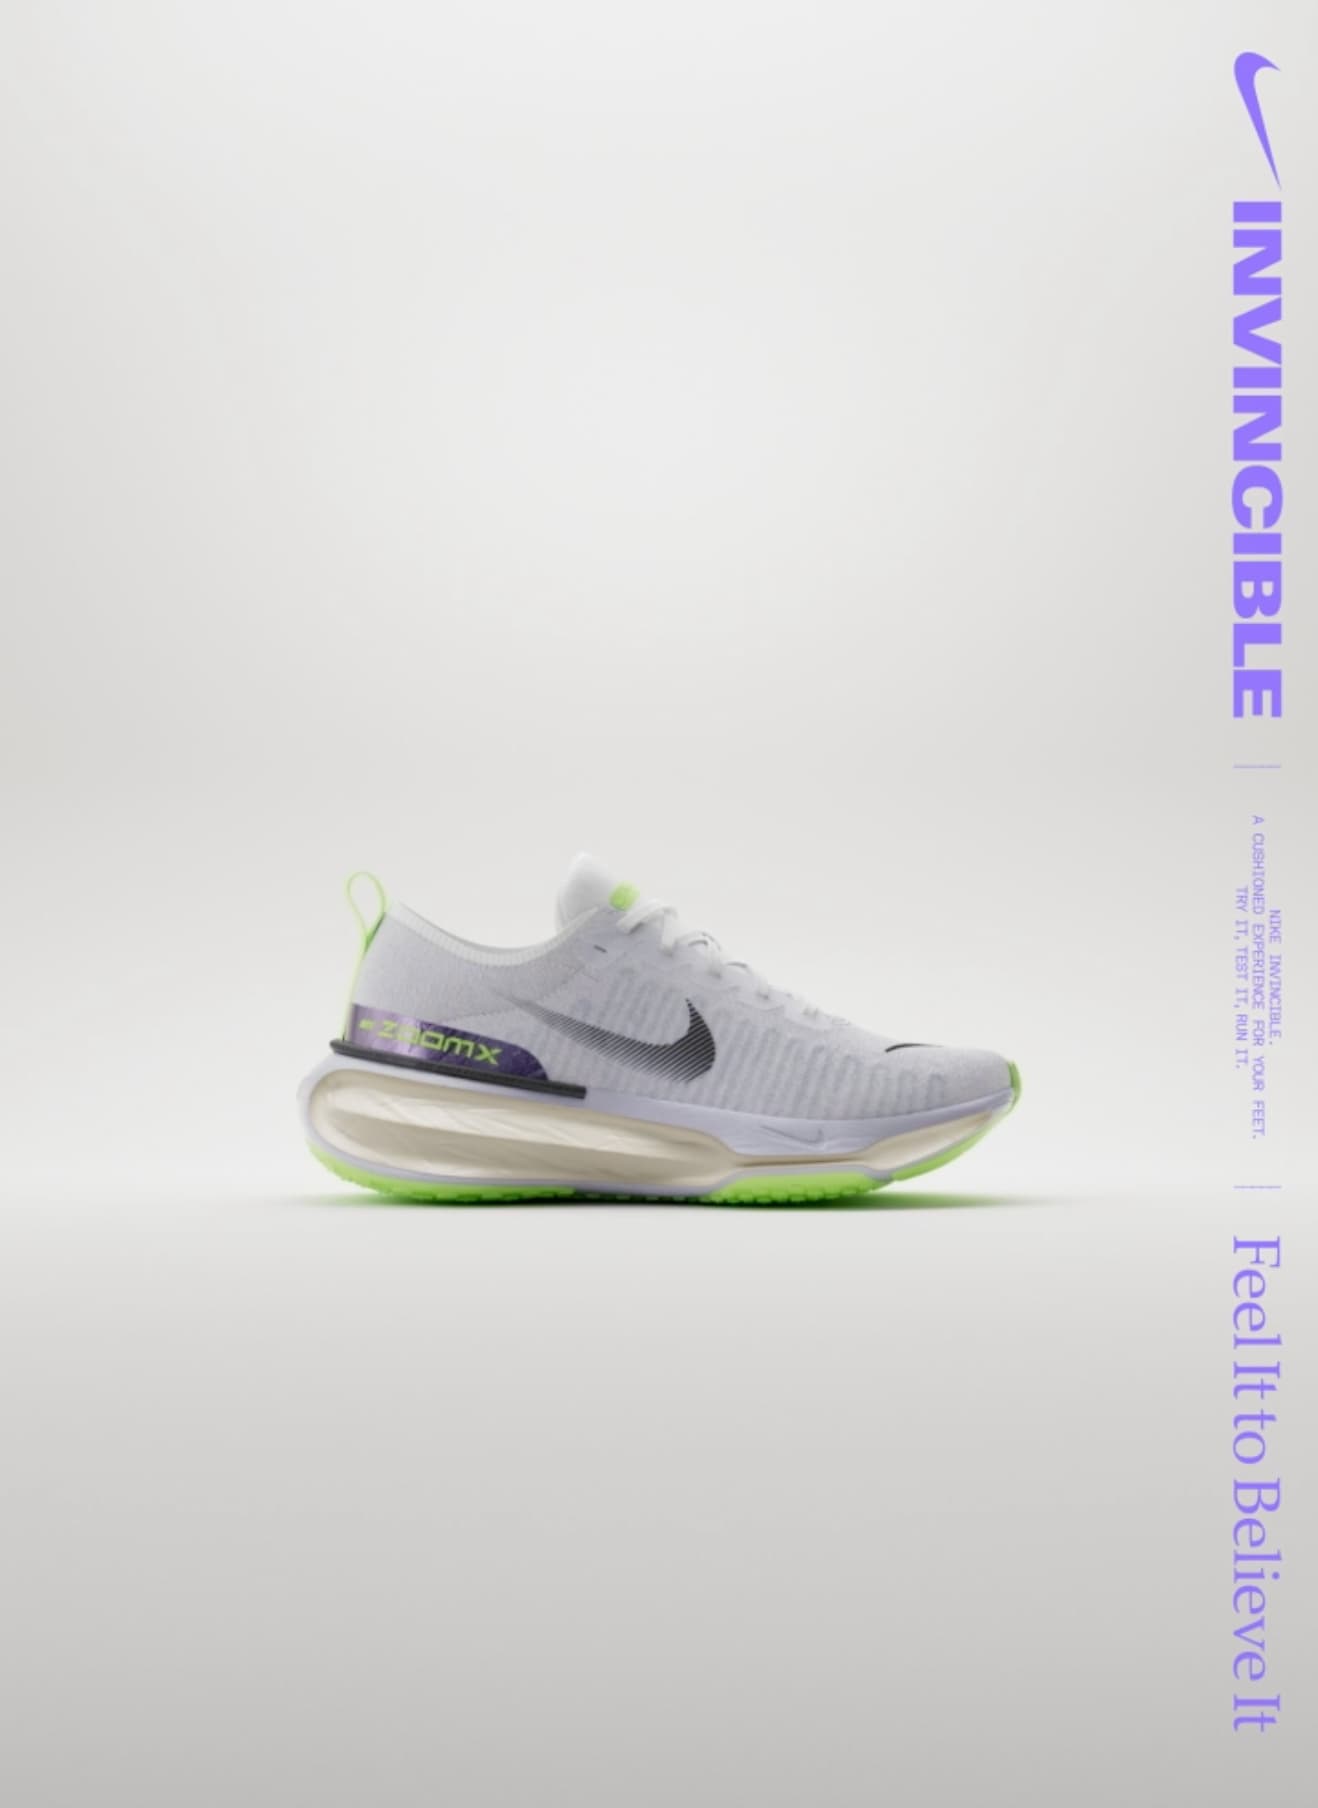 Site oficial de Nike.